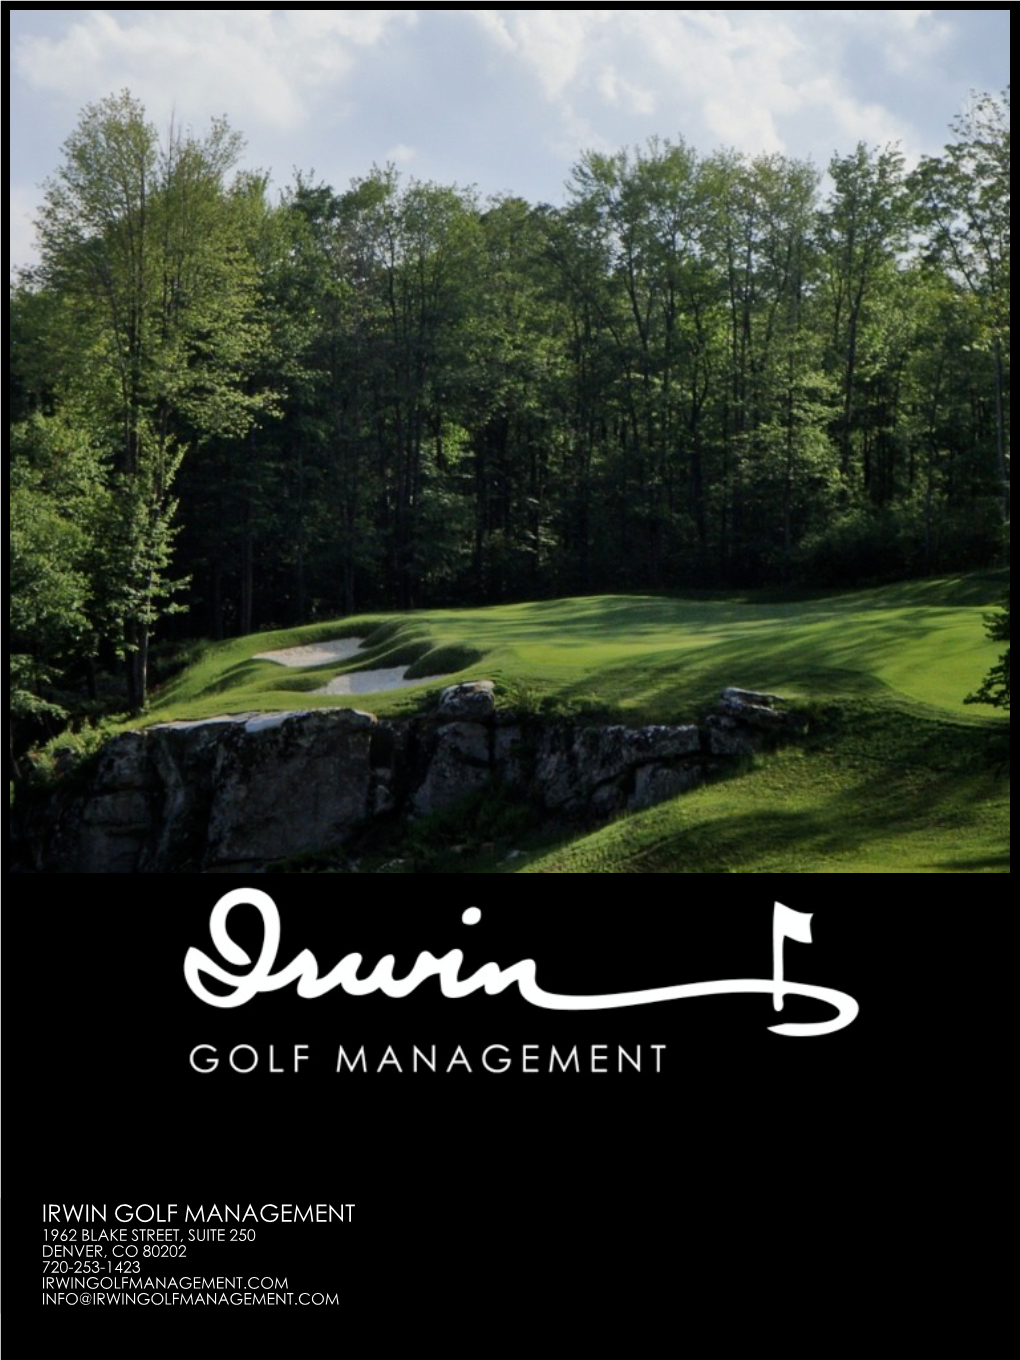 IRWIN GOLF MANAGEMENT 1962 BLAKE STREET, SUITE 250 DENVER, CO 80202 720-253-1423 IRWINGOLFMANAGEMENT.COM INFO@IRWINGOLFMANAGEMENT.COM Welcome to Irwin Golf Management